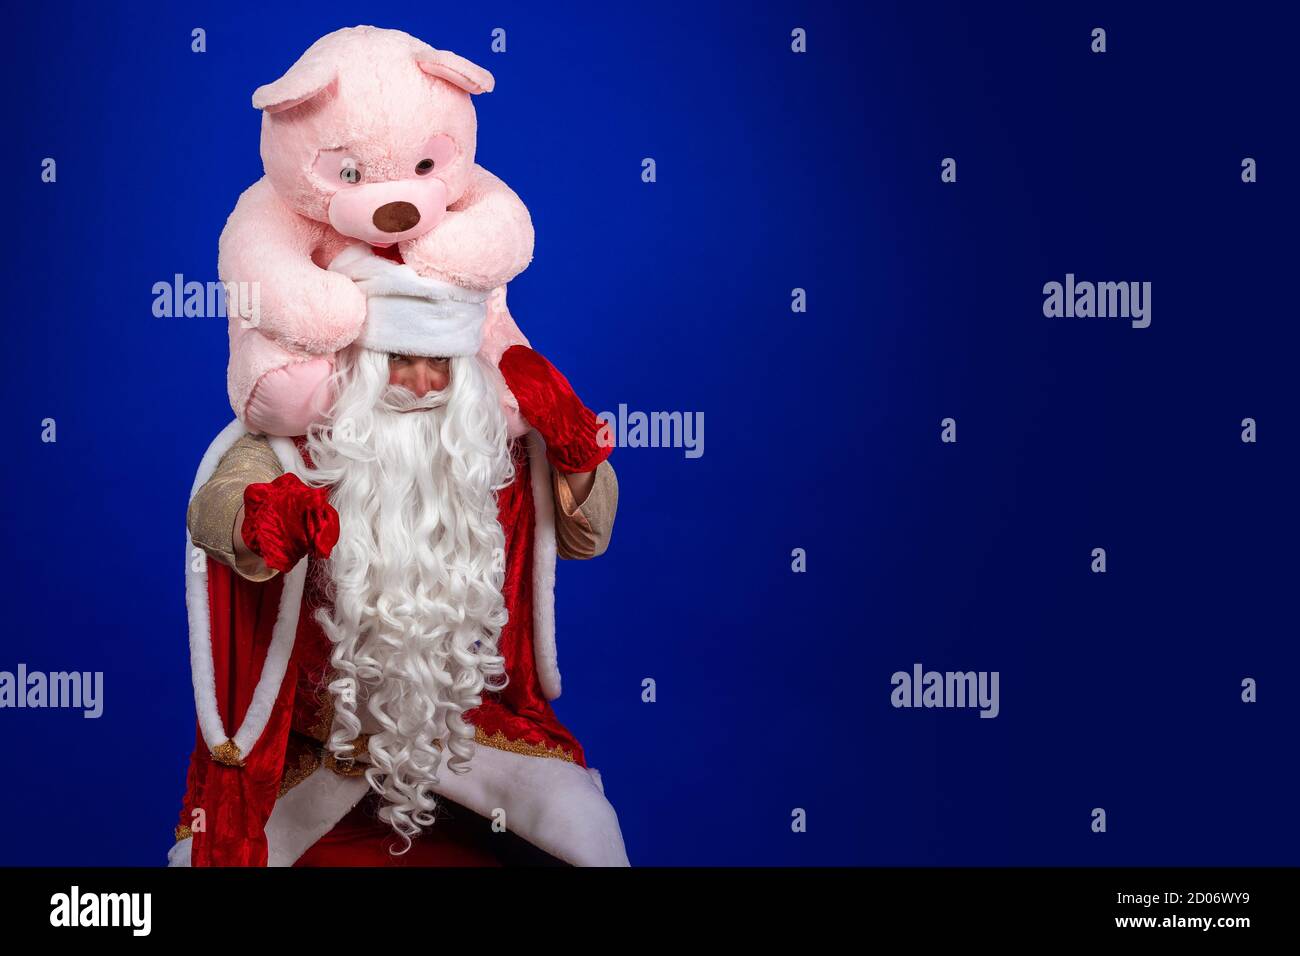 Babbo Natale emozionale con una lunga barba bianca in un cappotto rosso e cappello bianco in posa con un grande orsetto rosa. Foto Stock